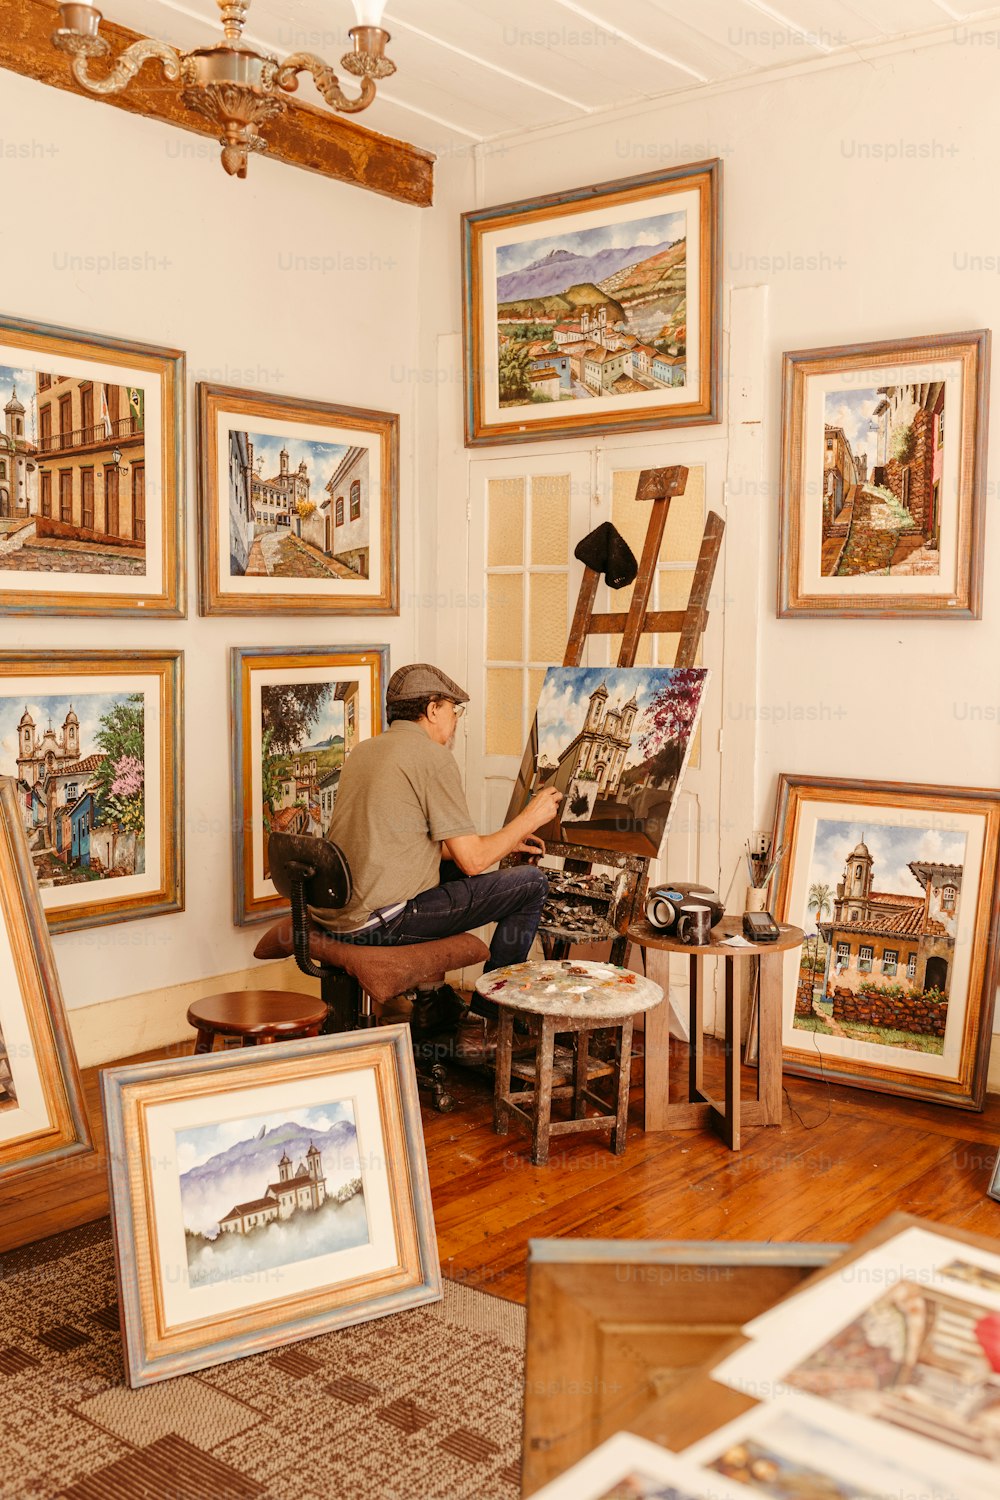 Un homme assis sur une chaise devant des tableaux